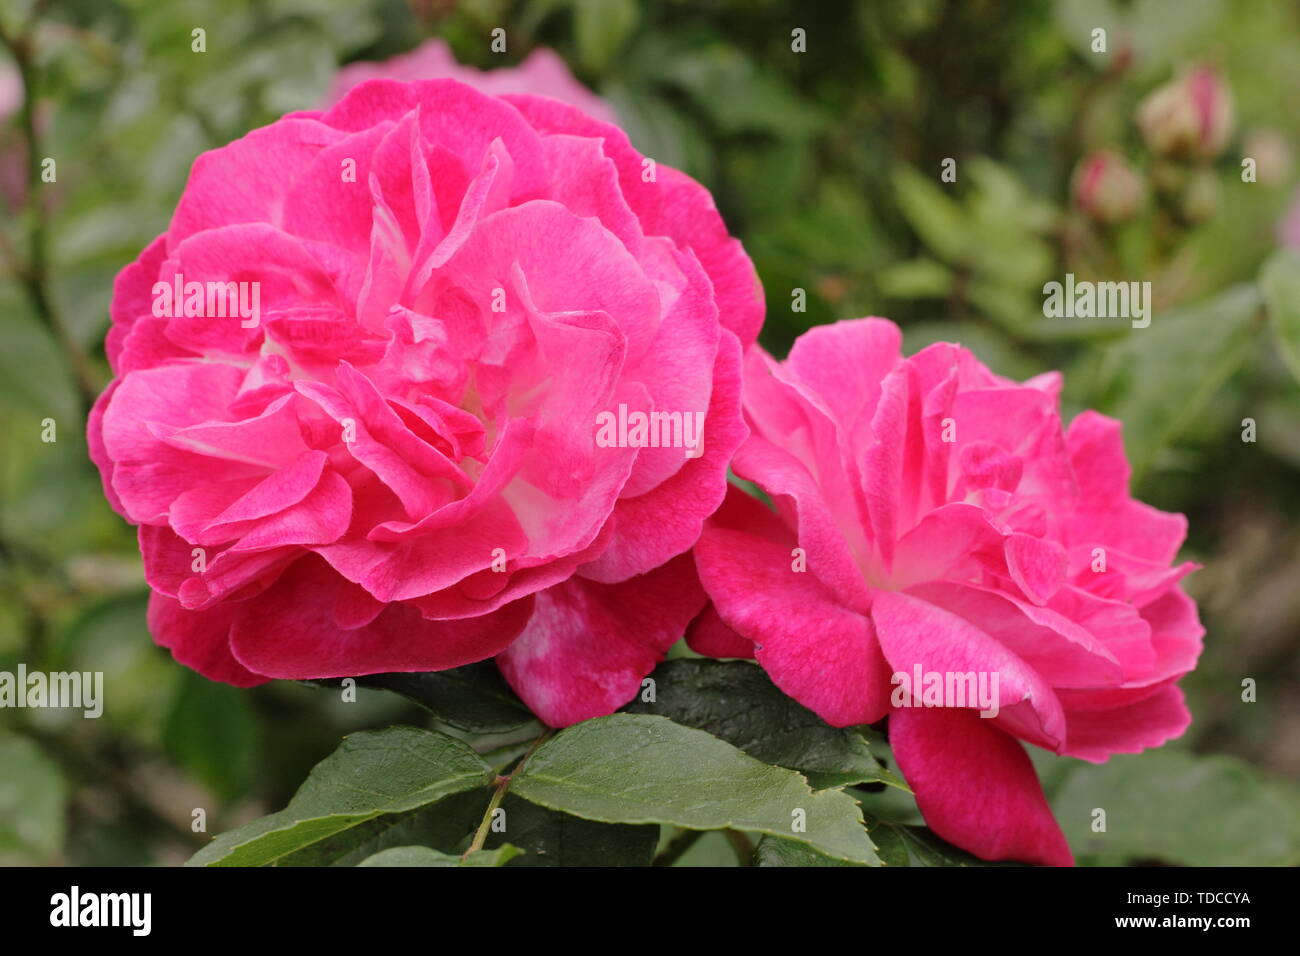 Rosa sophies flor perpetua fotografías e imágenes de alta resolución - Alamy